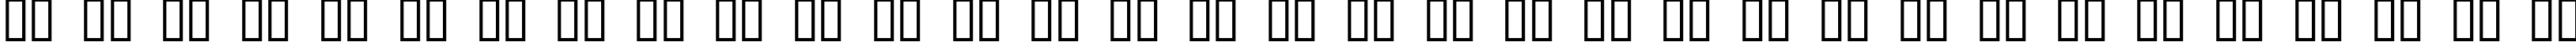 Пример написания русского алфавита шрифтом CRAMPS